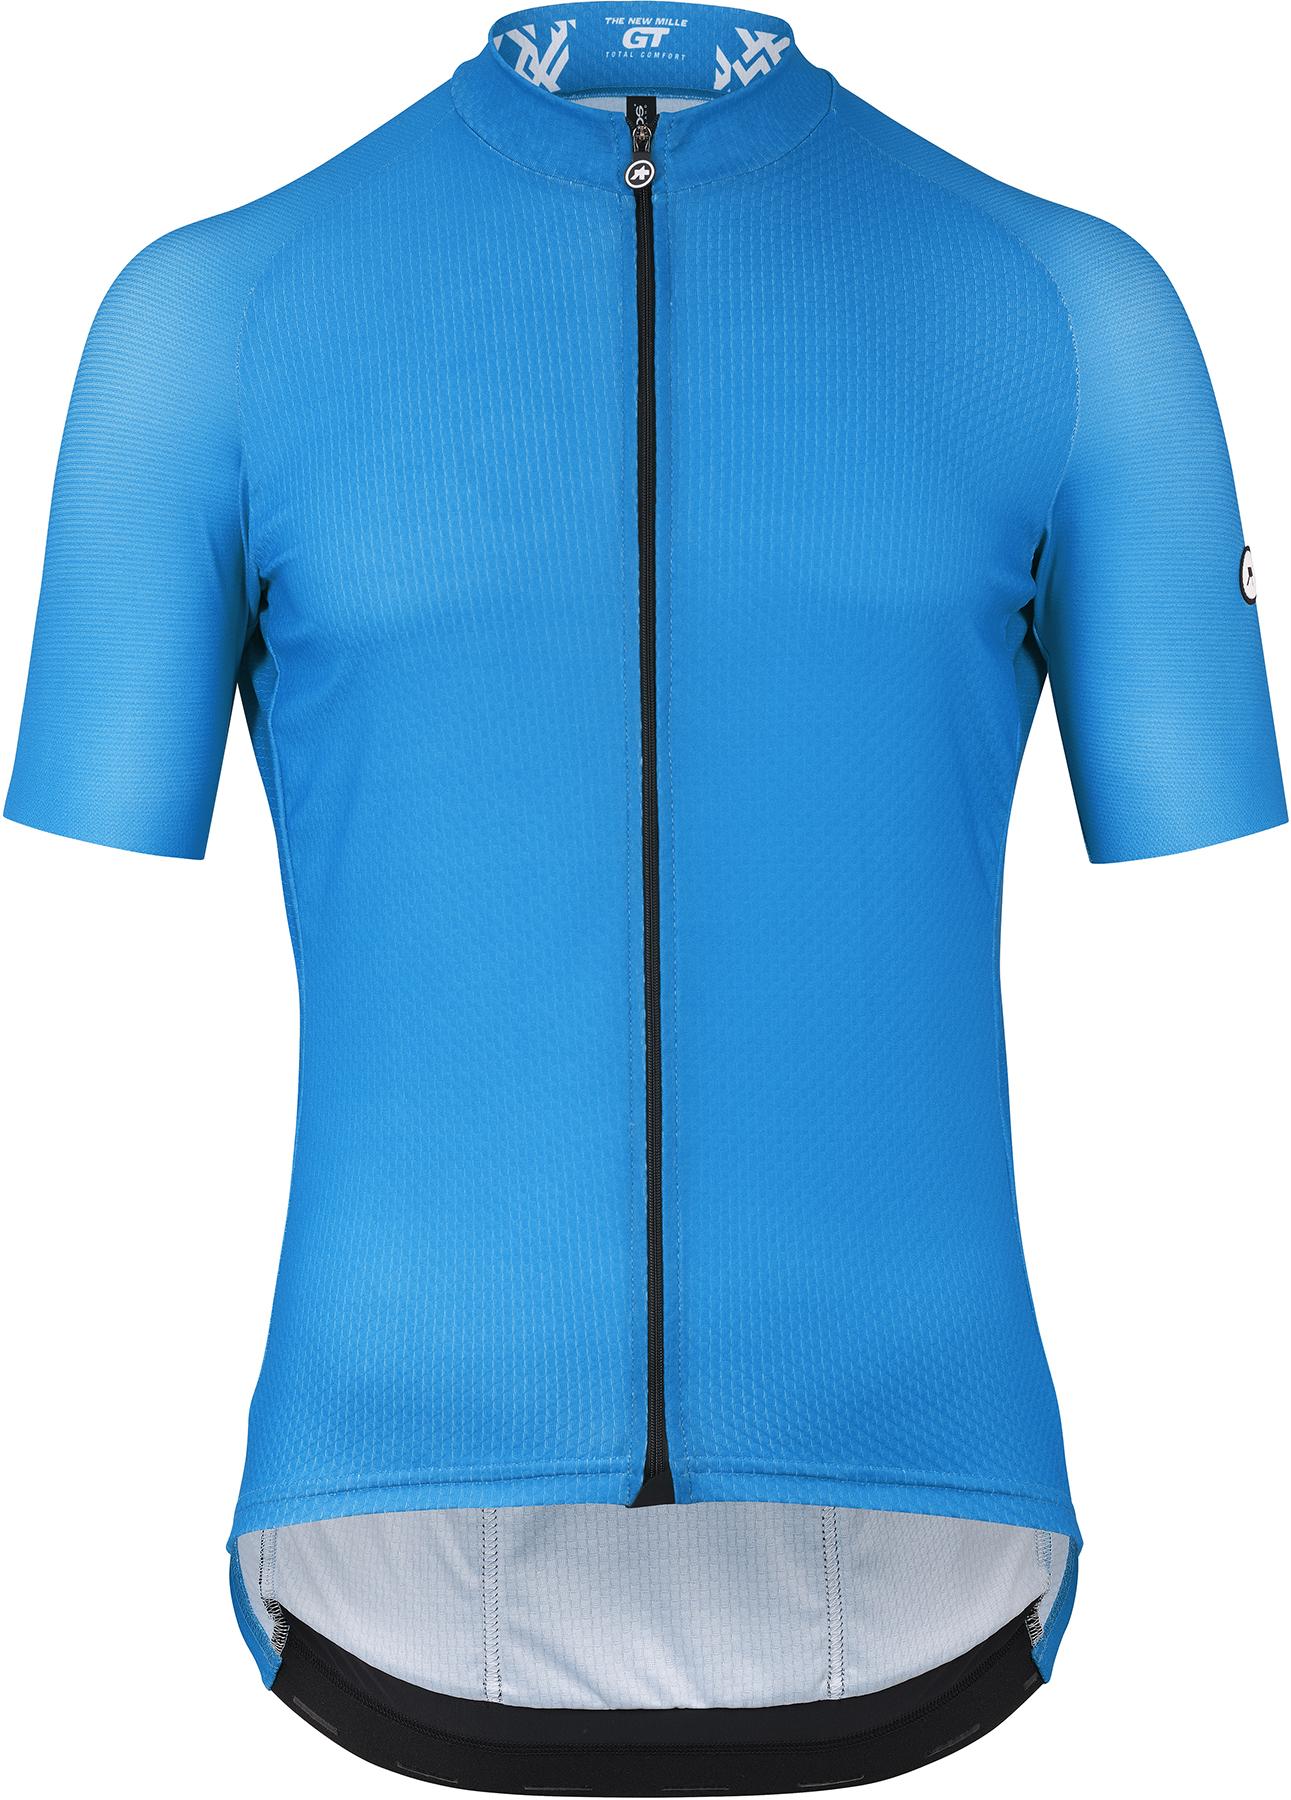 Assos Mille Gt Summer C2 Short Sleeve Cycling Jersey - Cyber Blue